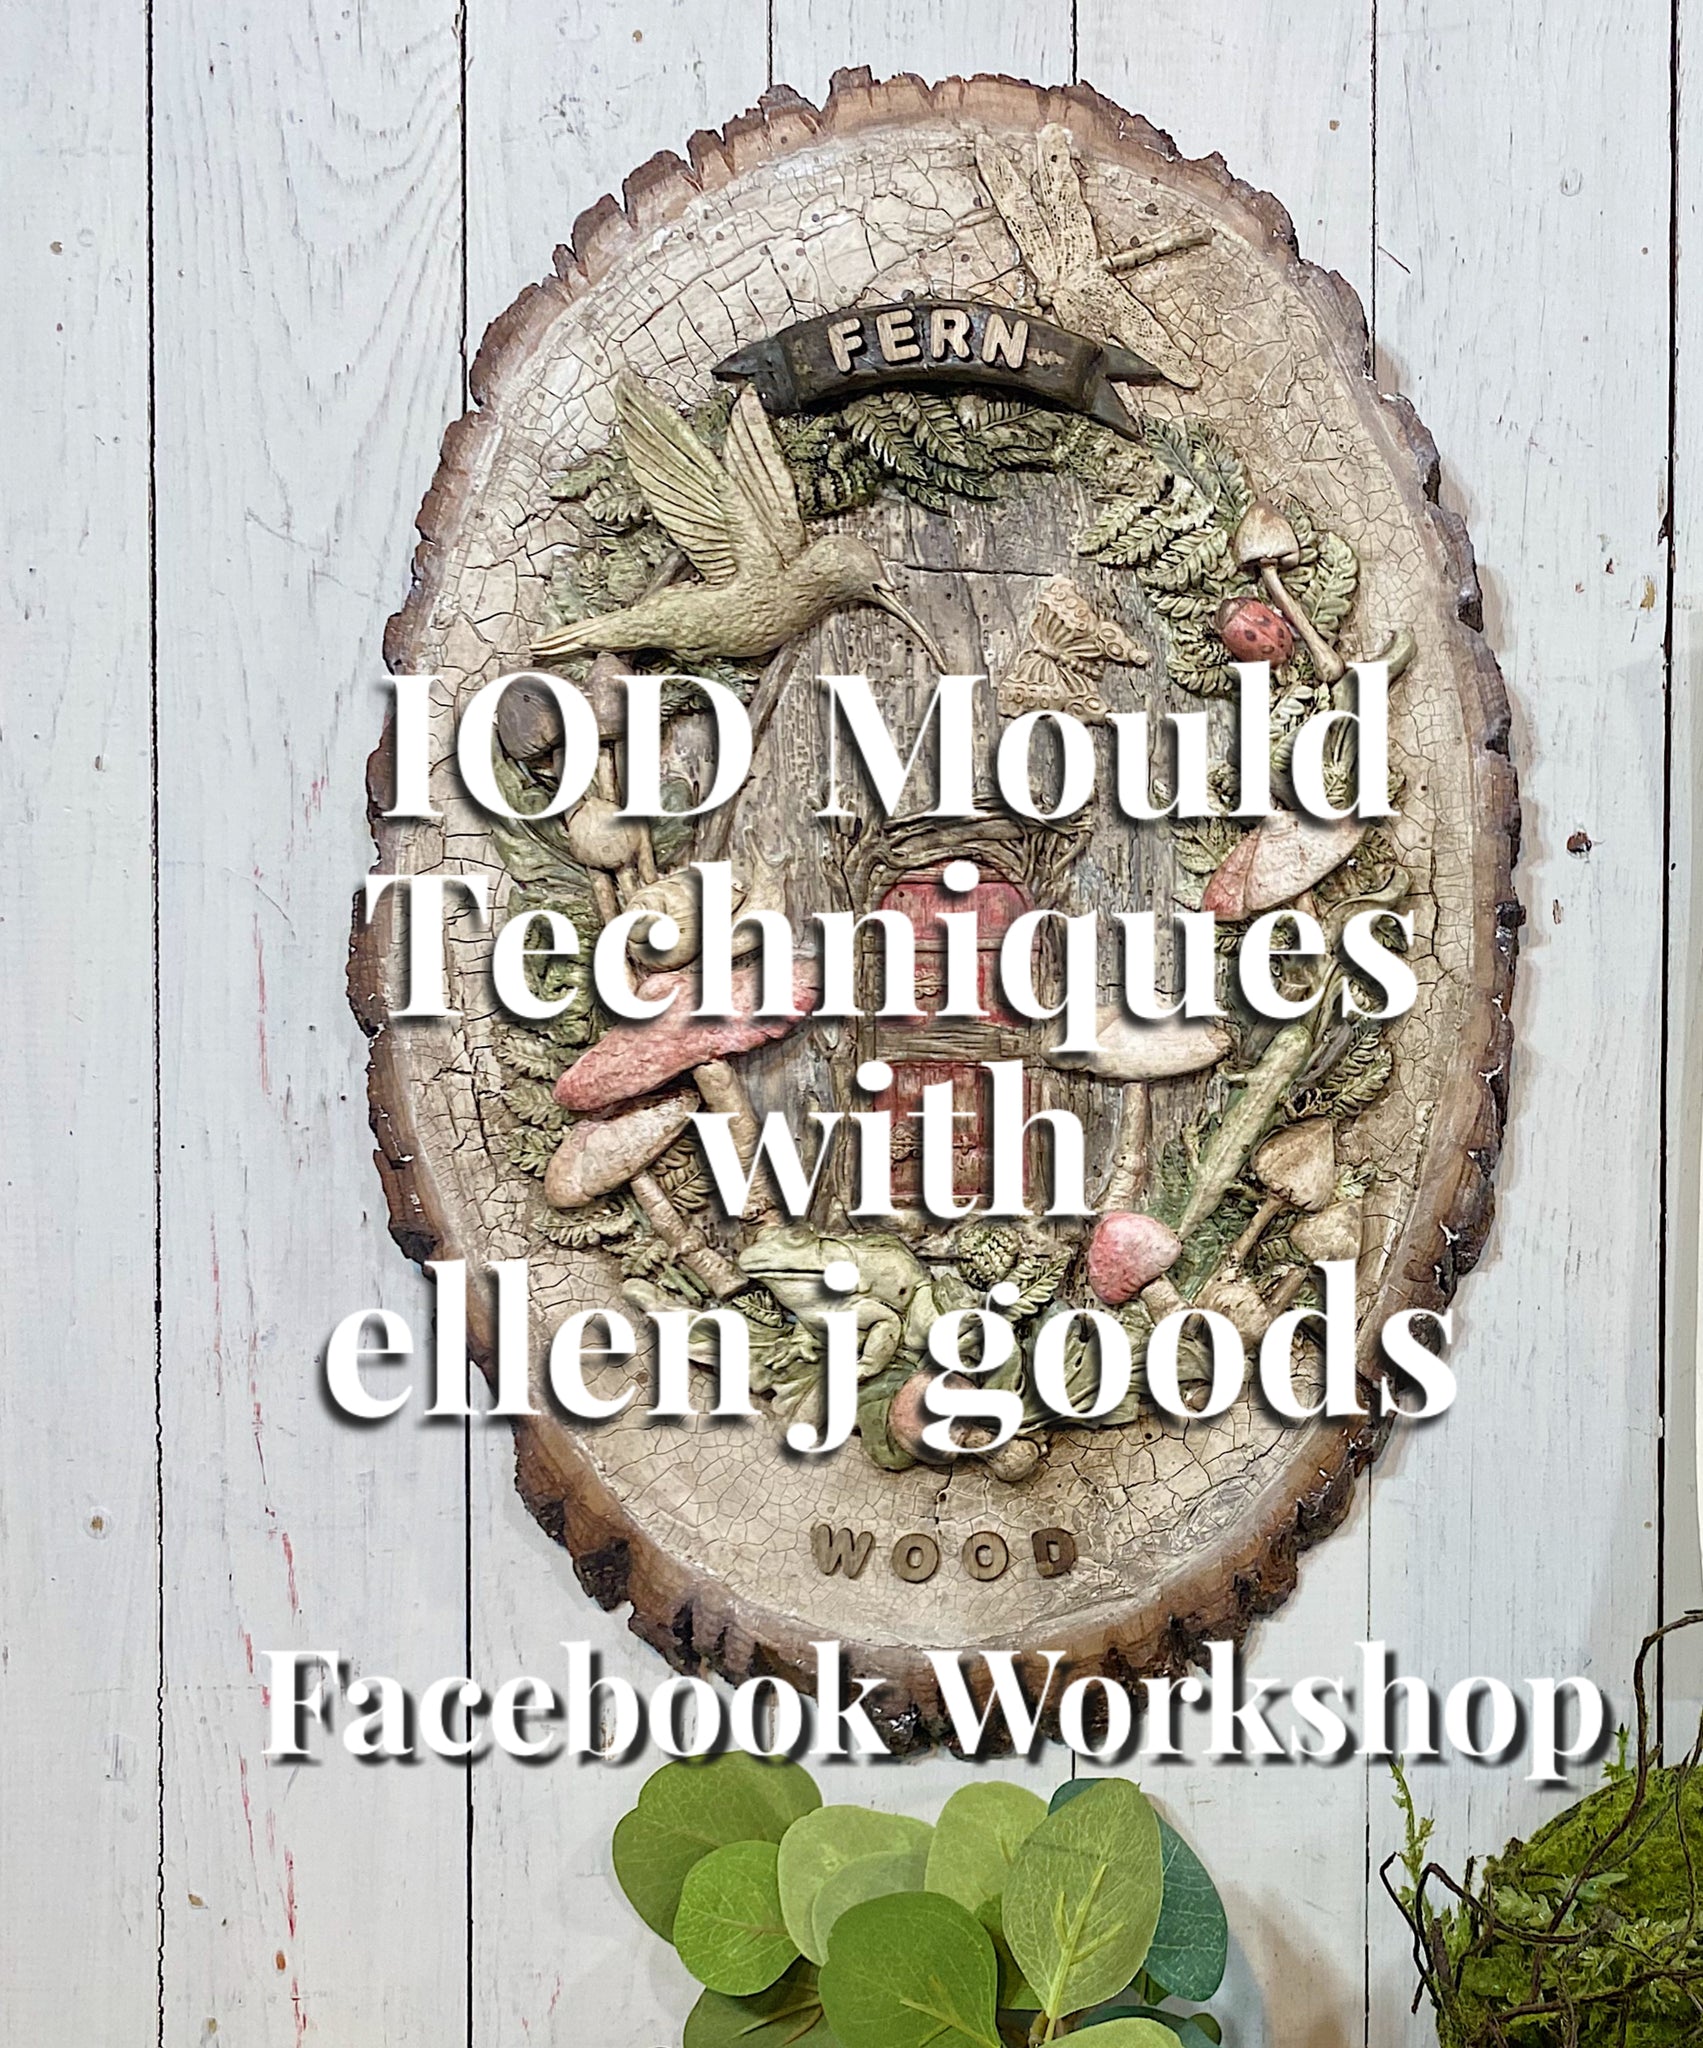 IOD Mould Techniques: a Facebook workshop with ellen j goods